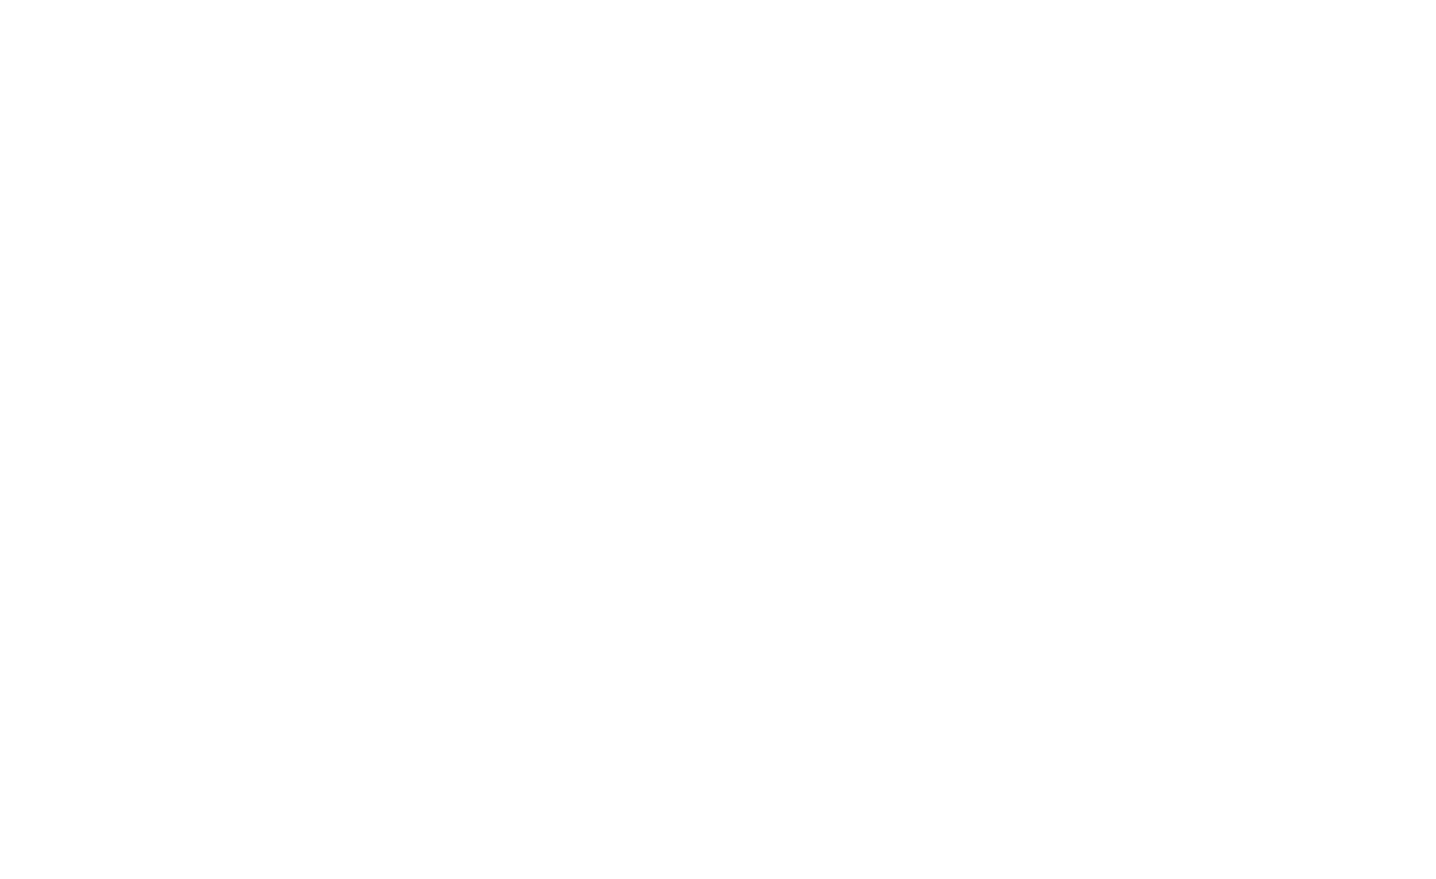 The Steelhouse